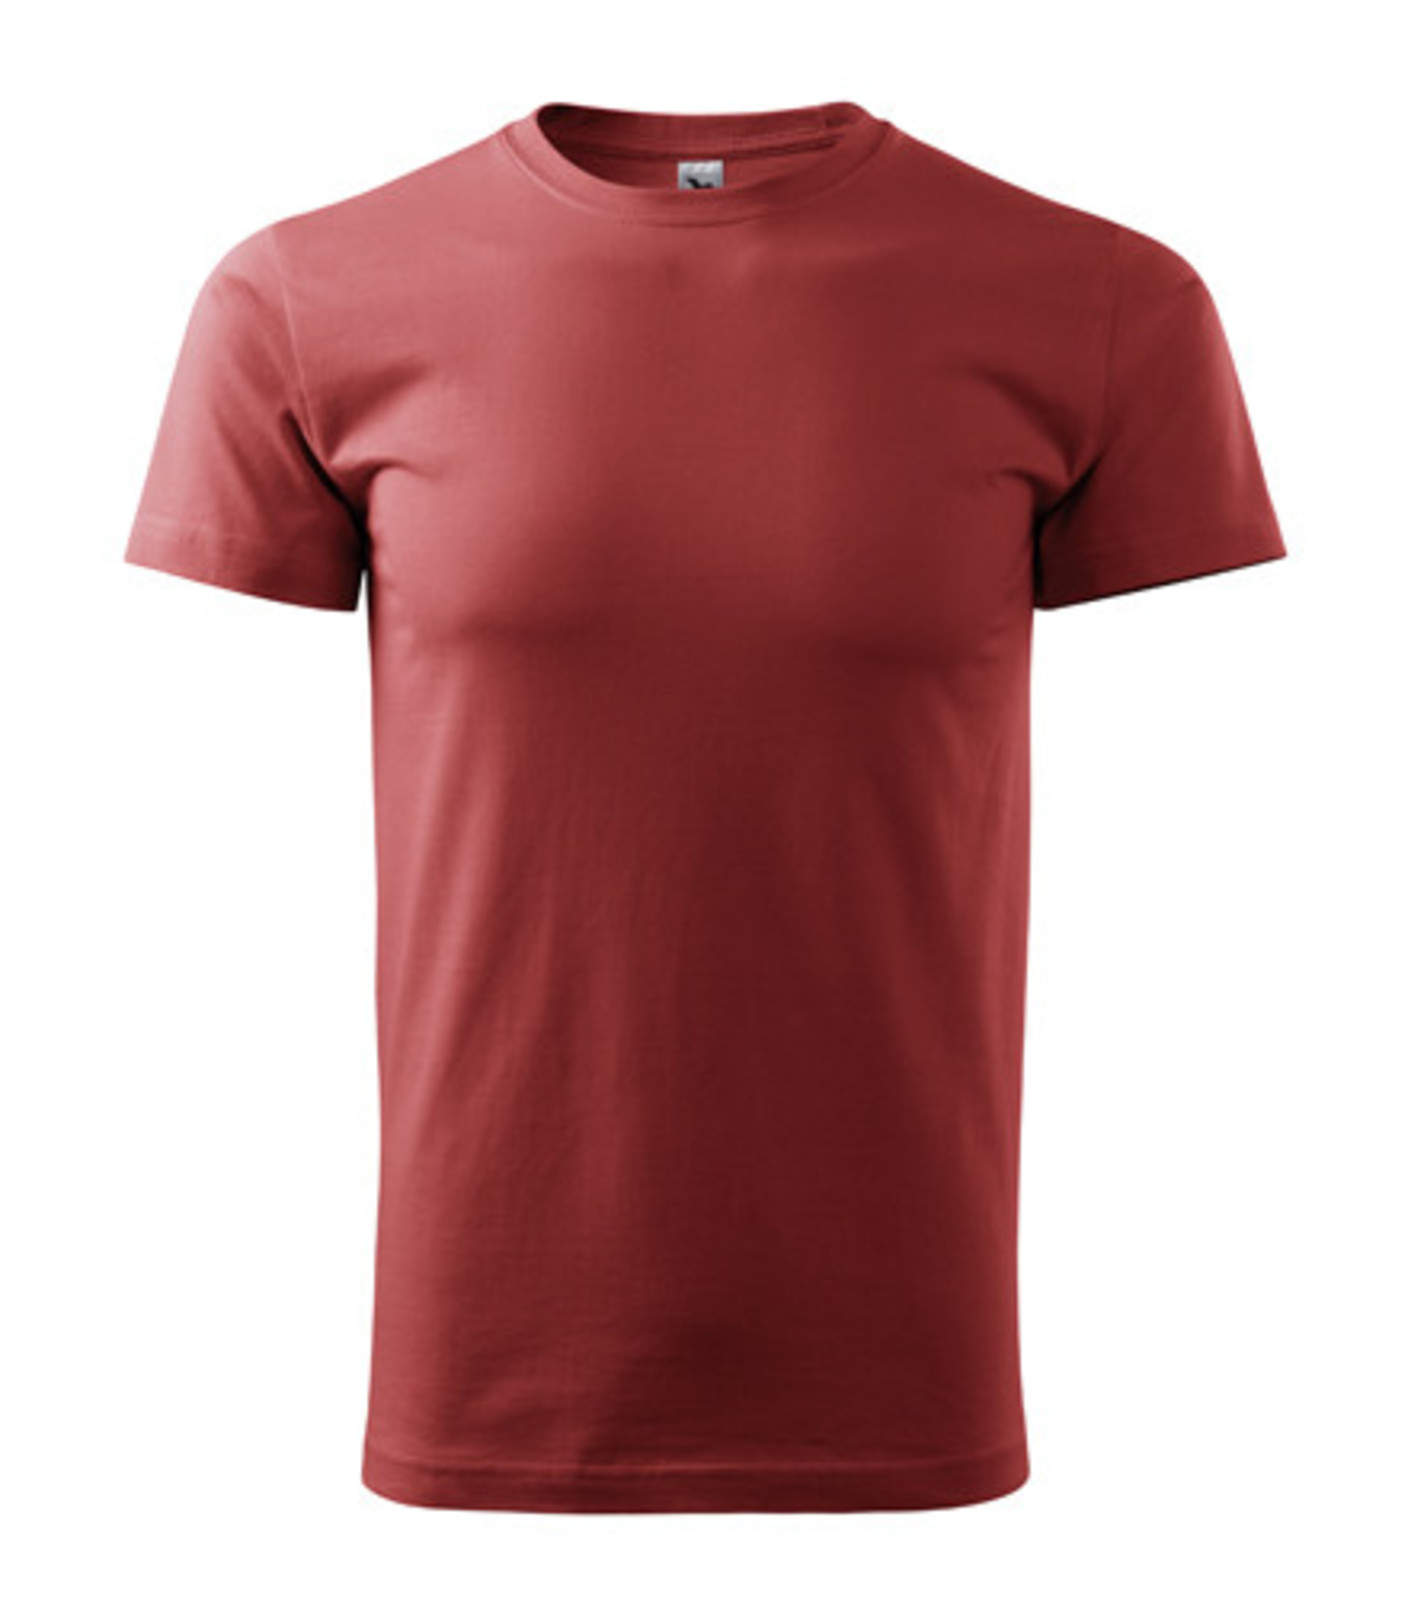 Unisex tričko Malfini Heavy New 137 - veľkosť: S, farba: bordová